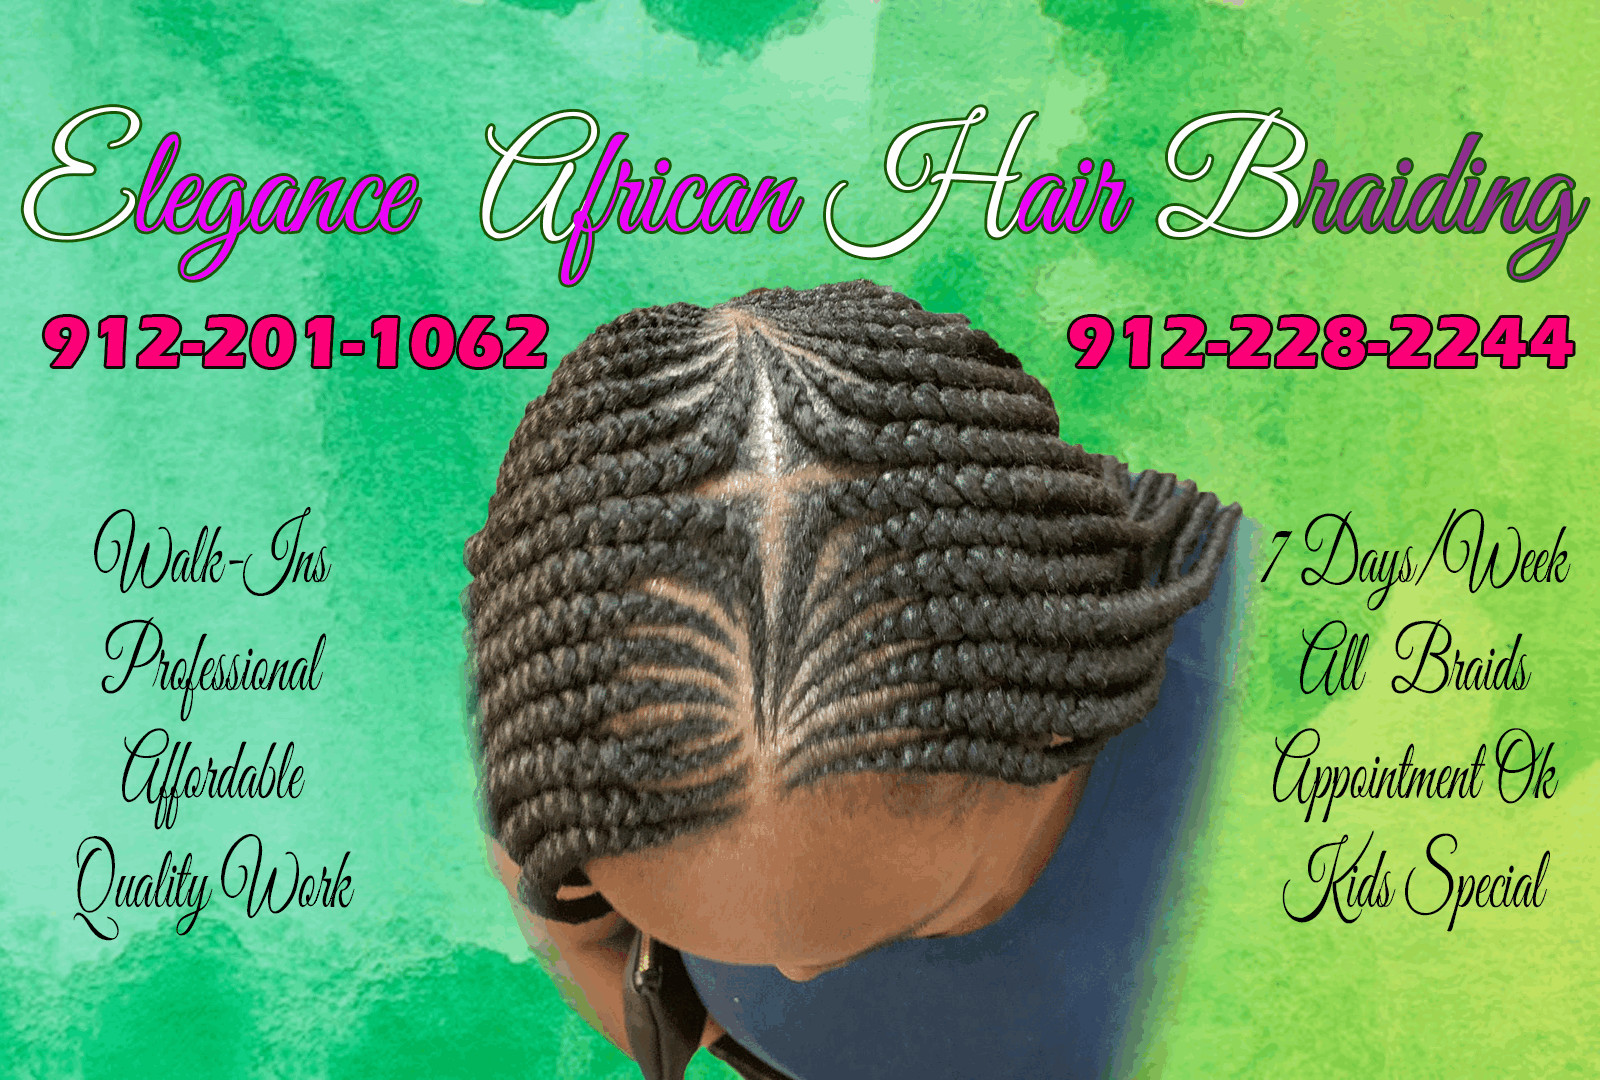 professional hair braiders in savannah ga| braiding salon near me